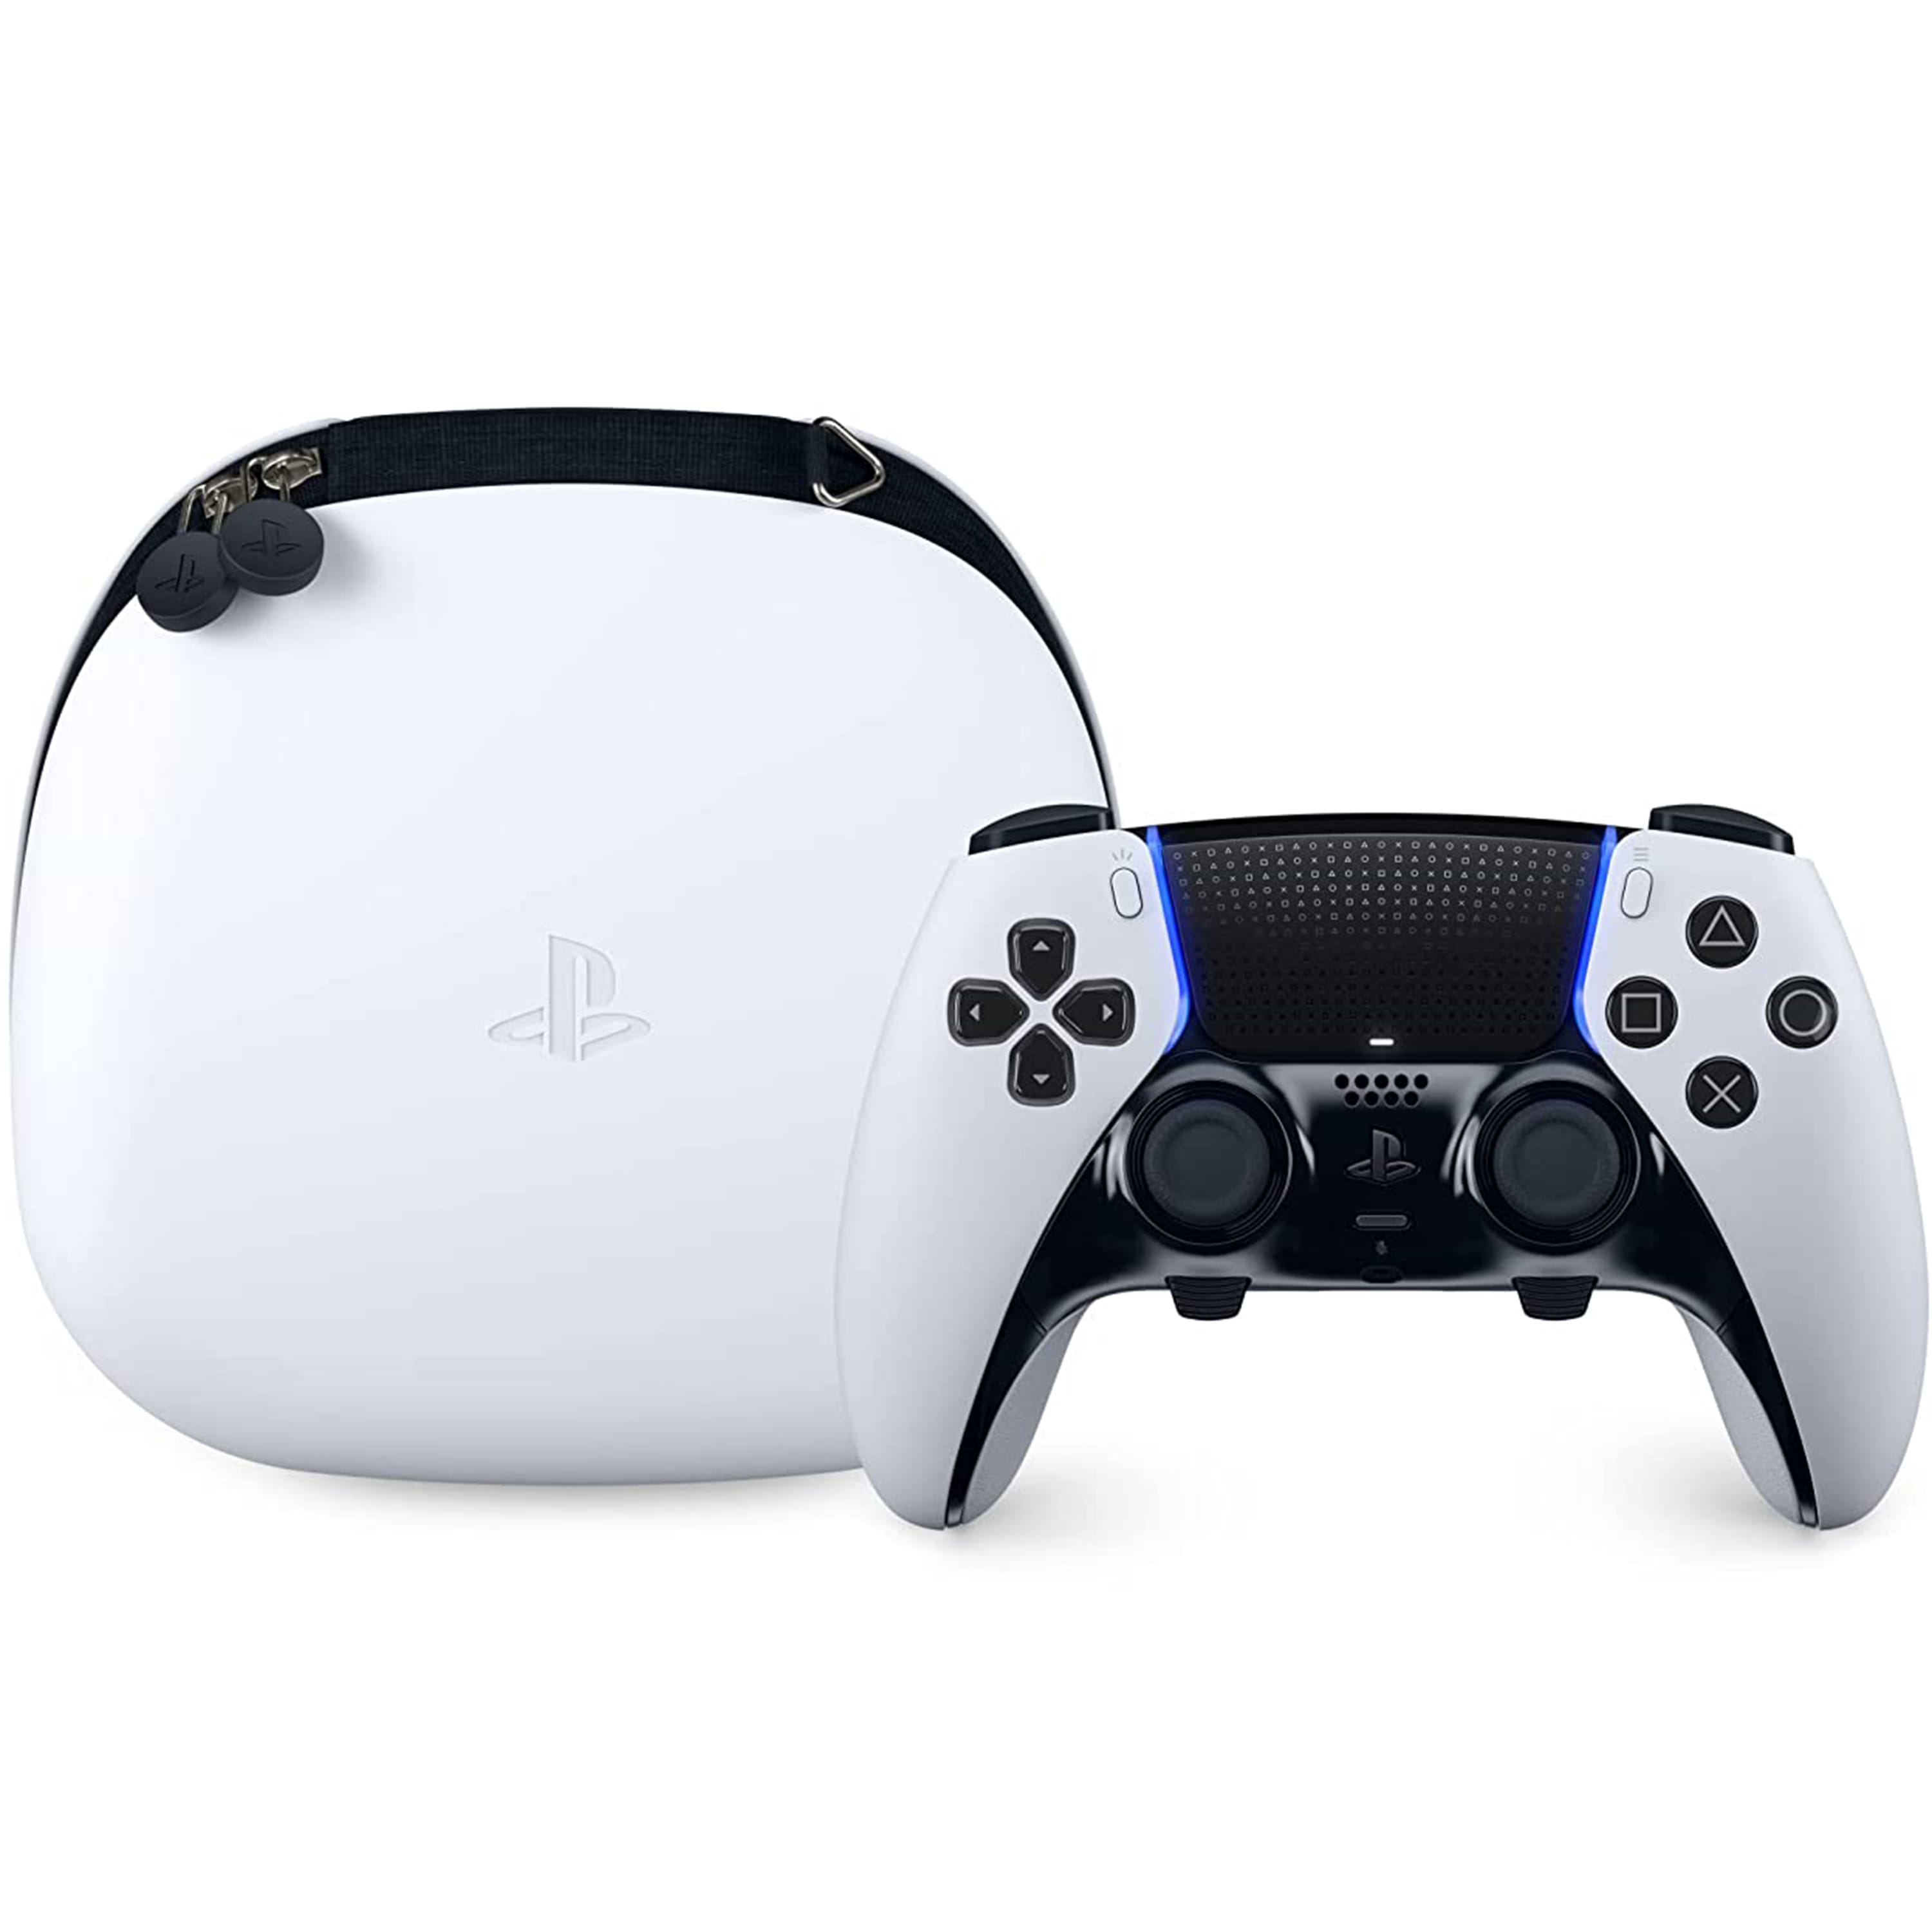 בקר אלחוטי Sony PlayStation DualSense Edge - צבע לבן שנה אחריות ע